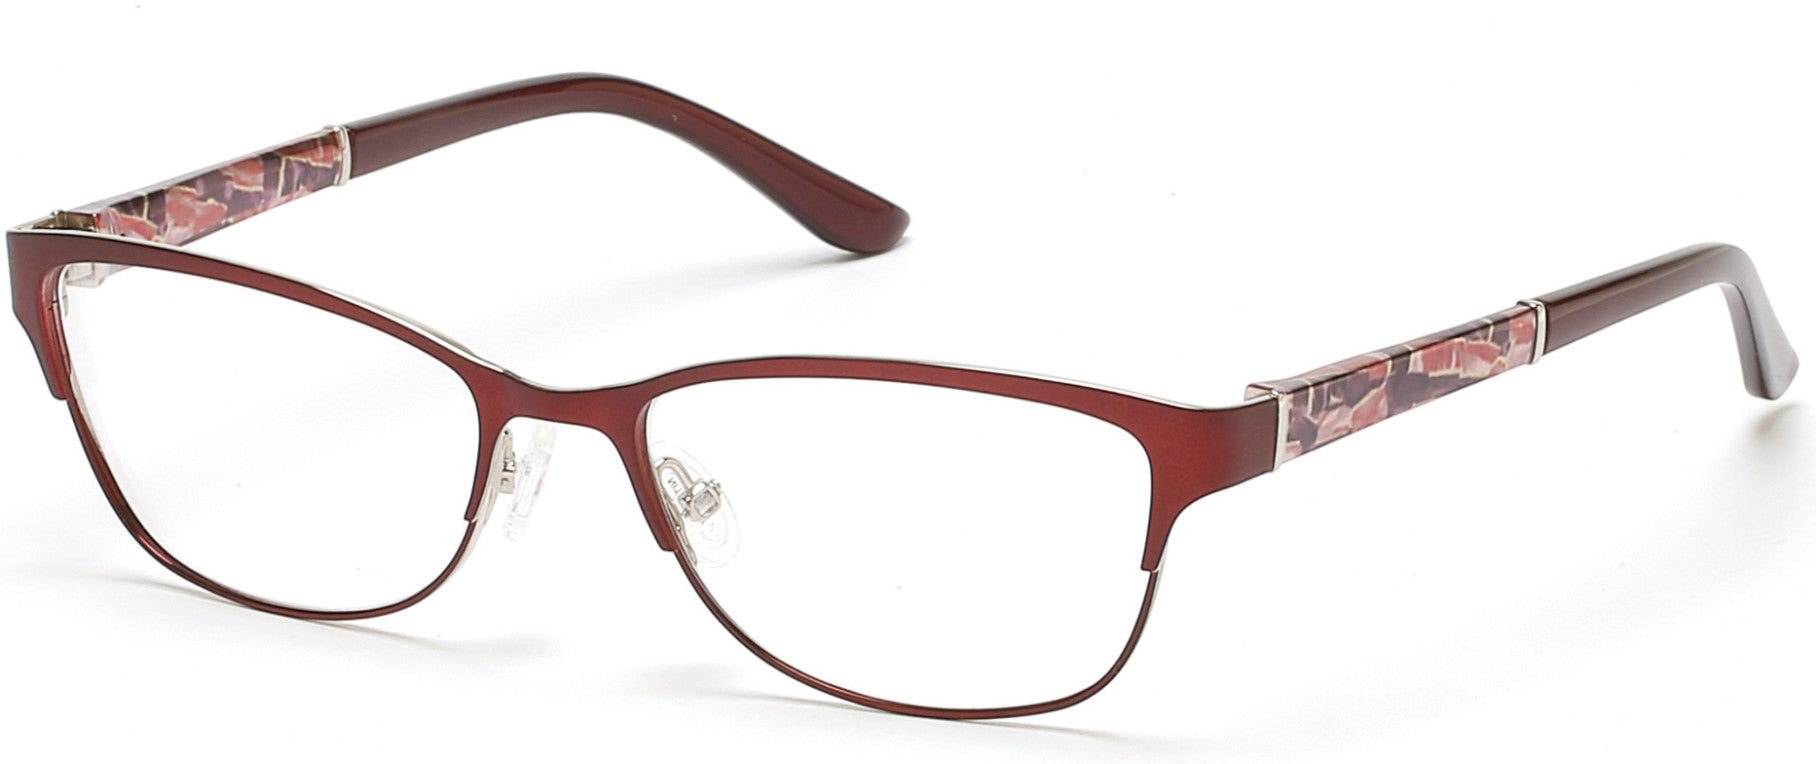 Marcolin MA5006 Eyeglasses 070-070 - Matte Bordeaux